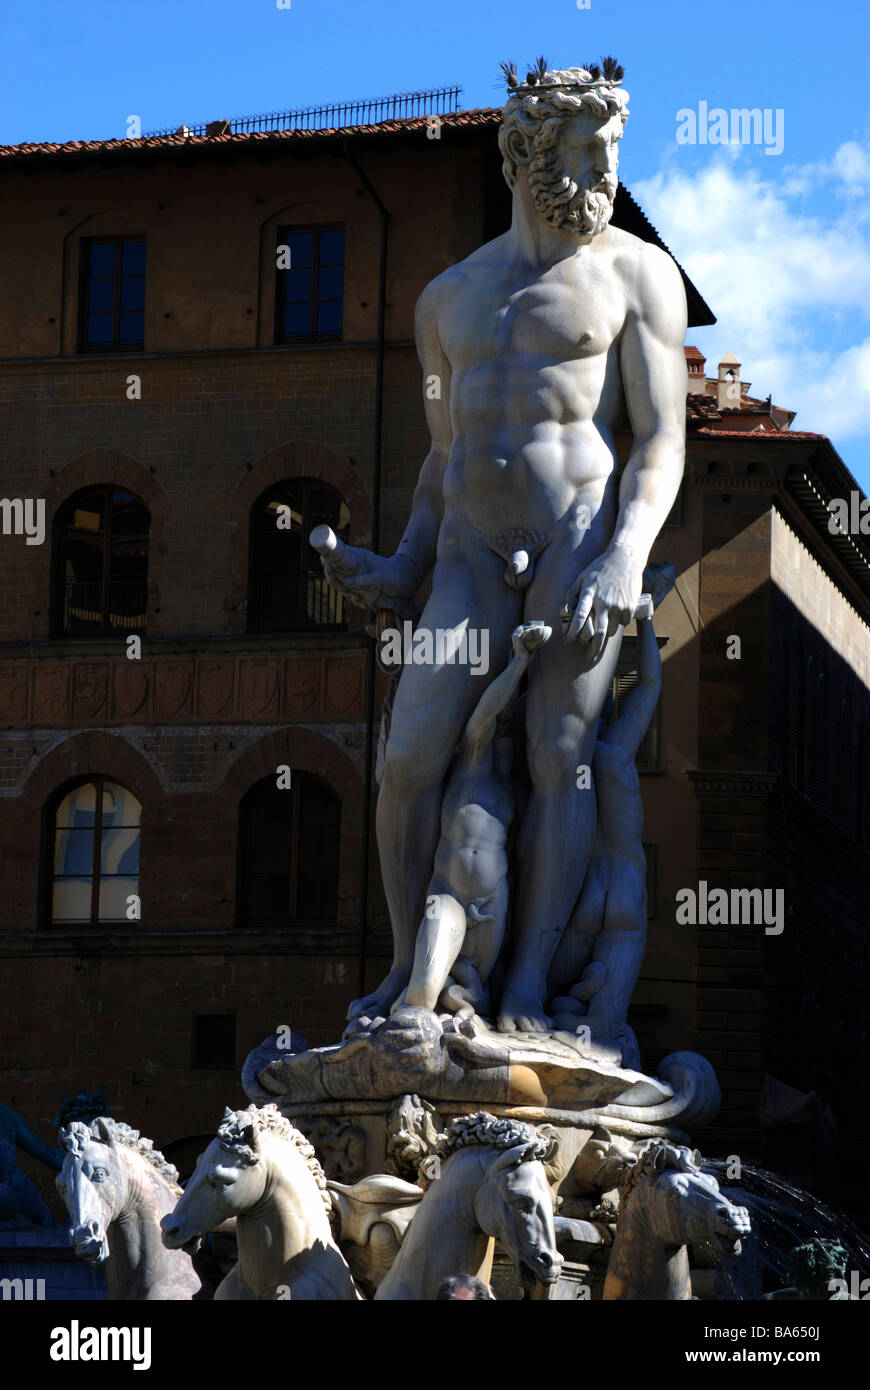 The Fountain of Neptune by Bartolomeo Ammannati, Piazza della Signoria, Florence, Italy Stock Photo